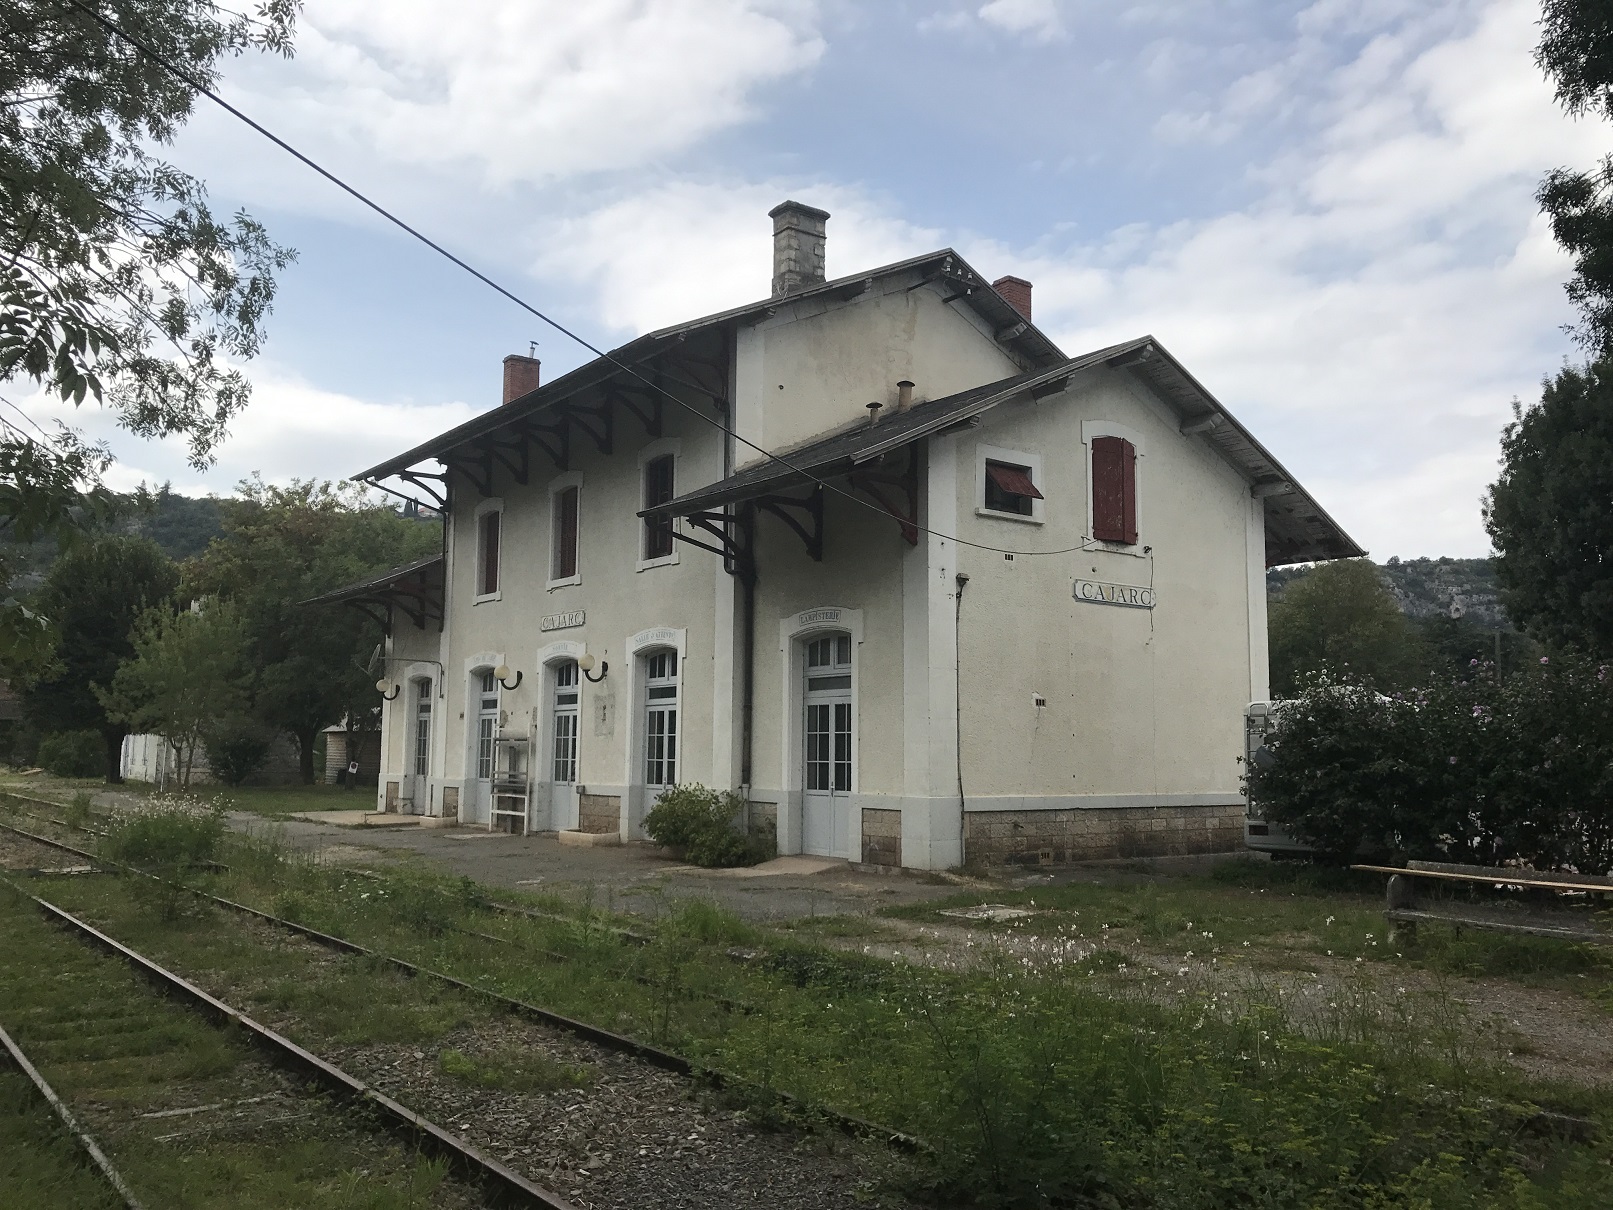 2017-08-16 - L'après-midi au musée ferroviaire de la gare de Cajarc (18).JPG